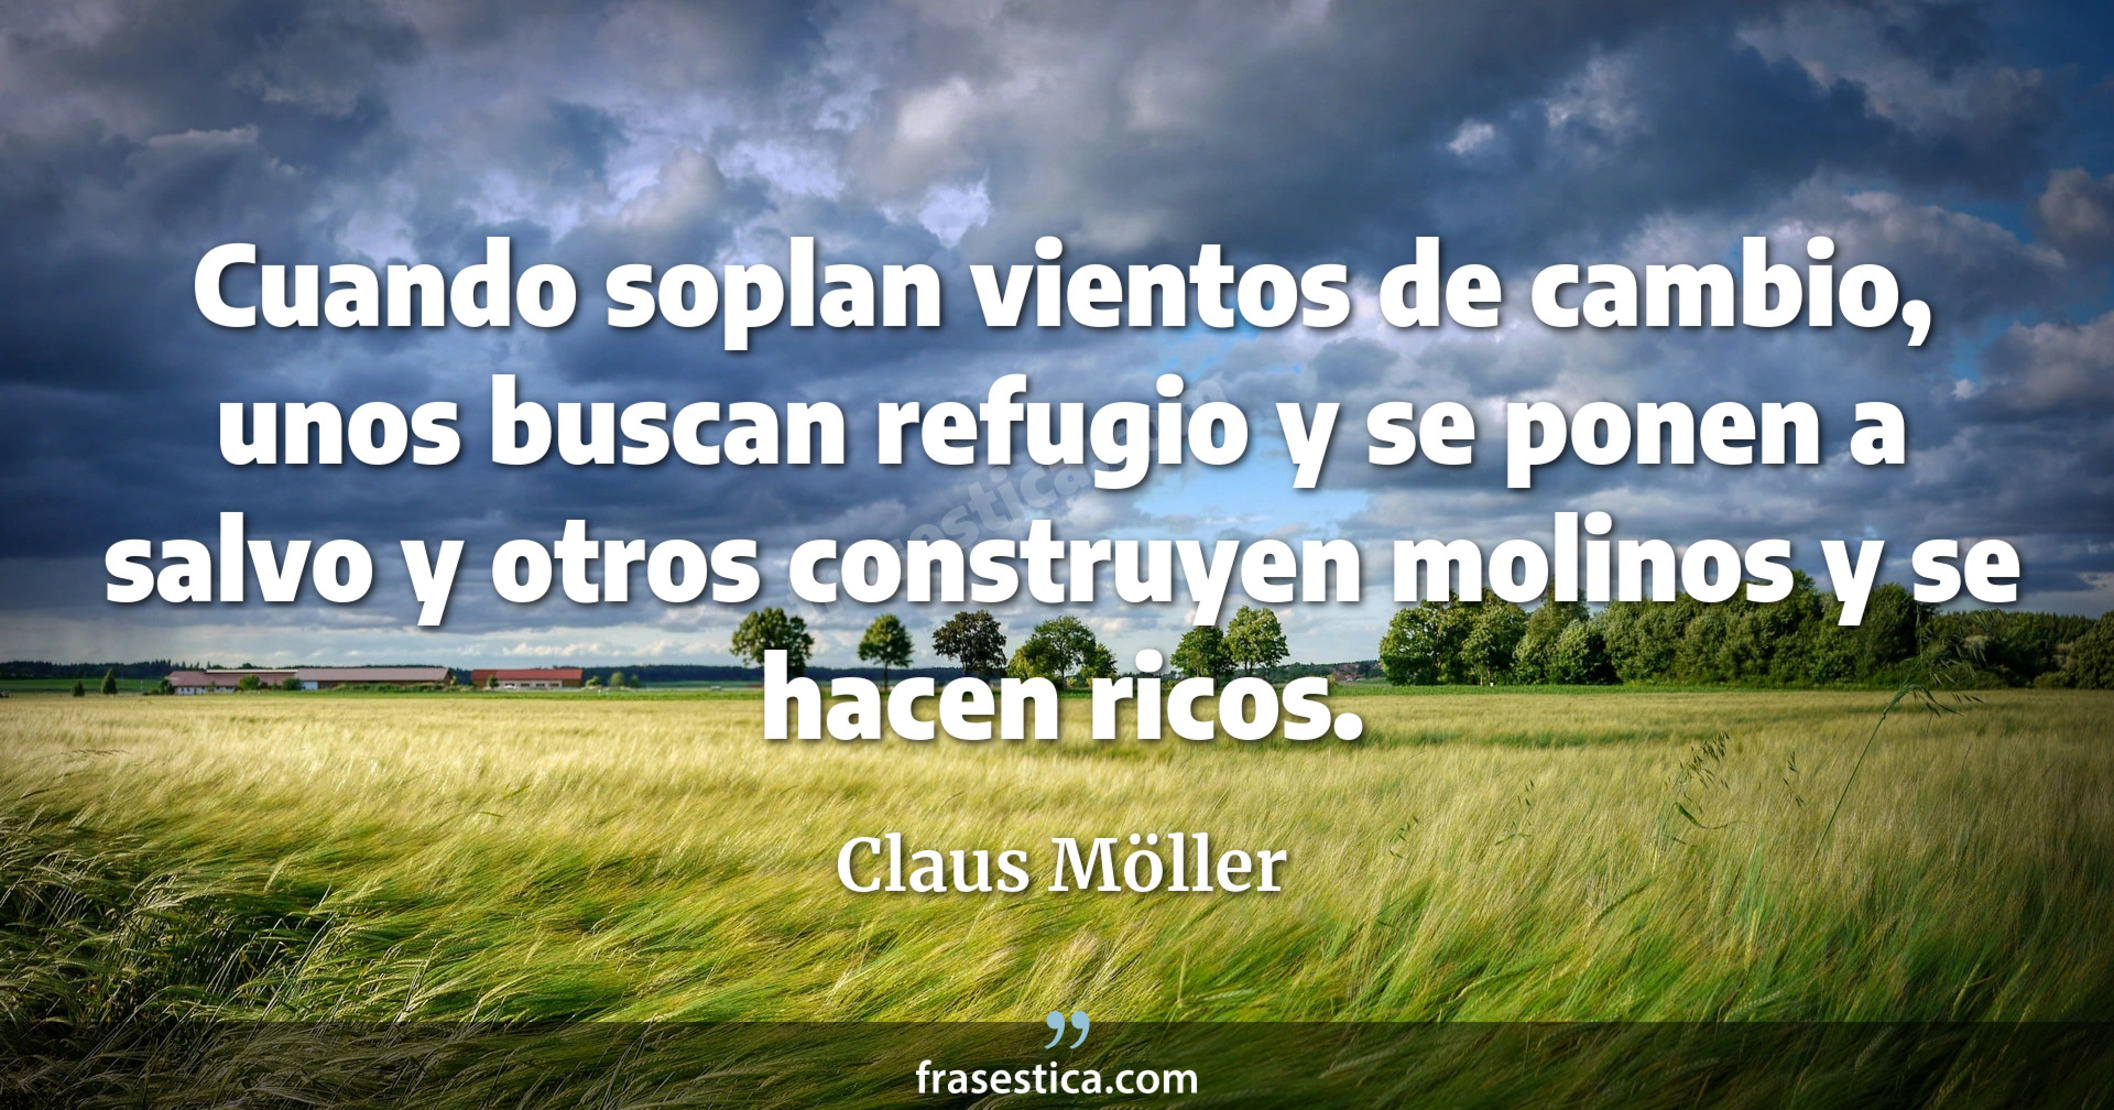 Cuando soplan vientos de cambio, unos buscan refugio y se ponen a salvo y otros construyen molinos y se hacen ricos. - Claus Möller